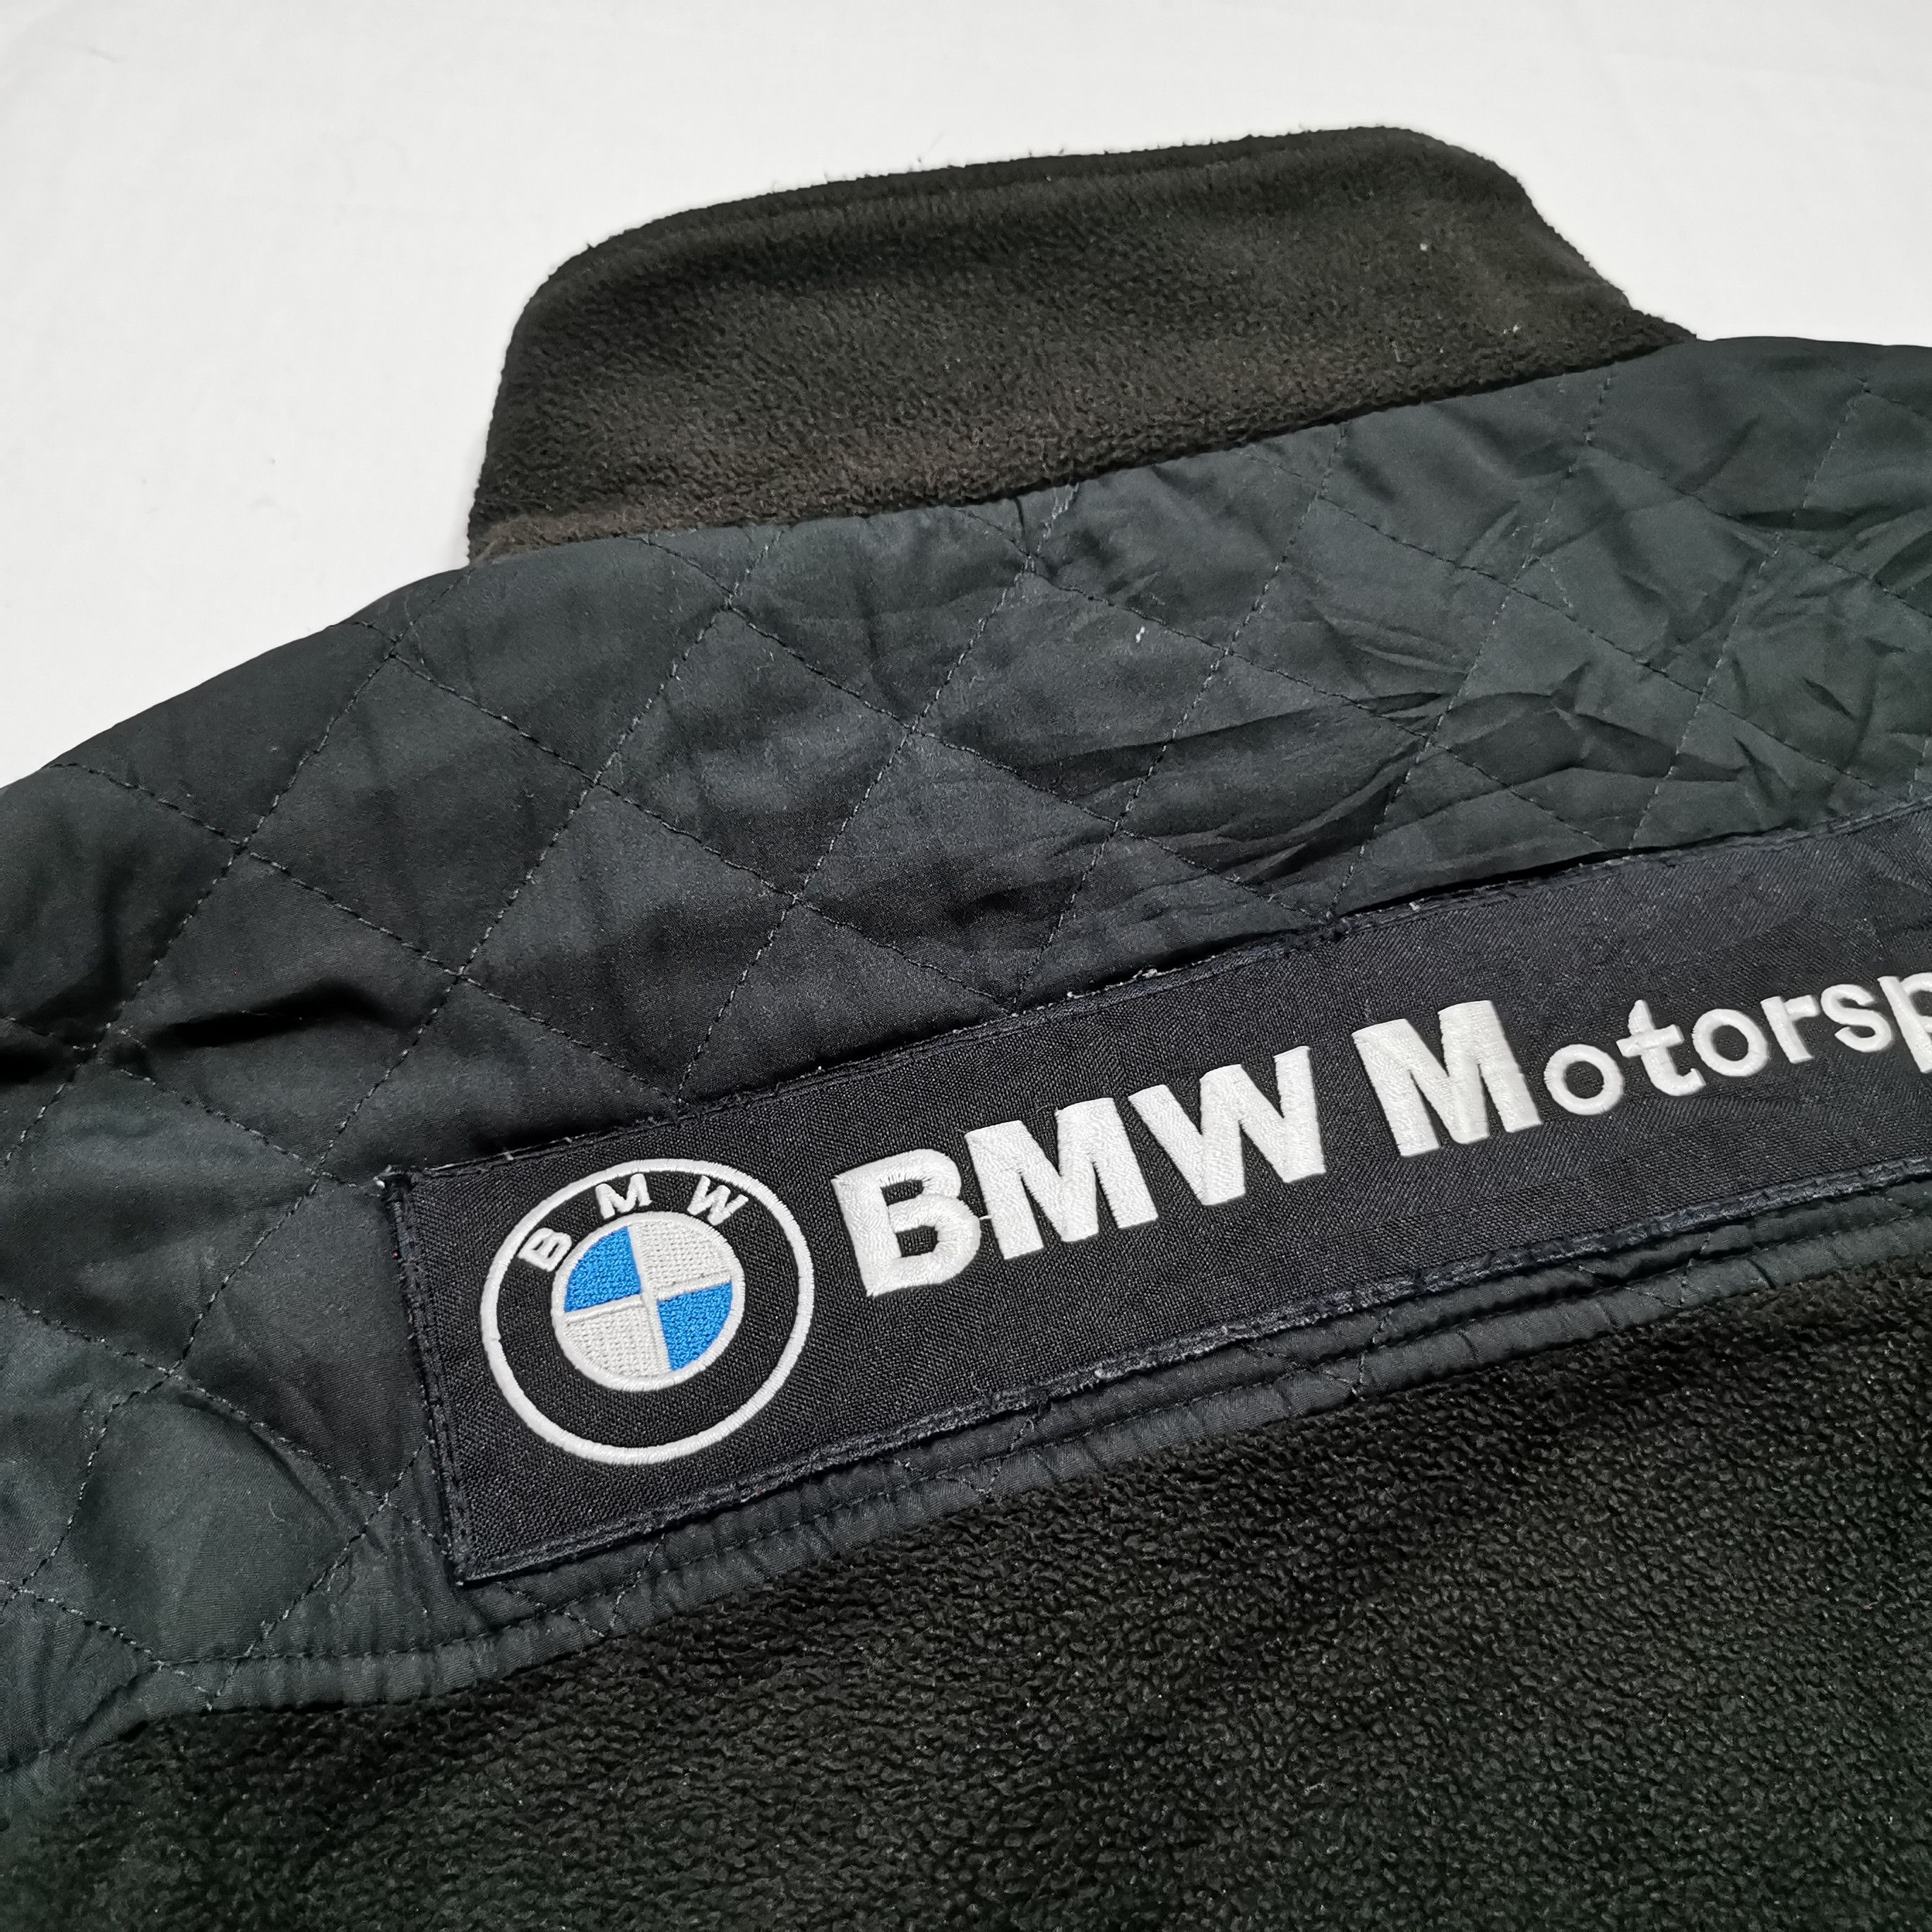 Vintage BMW MPower Motorsport RBS F1 Team Jacket - 12